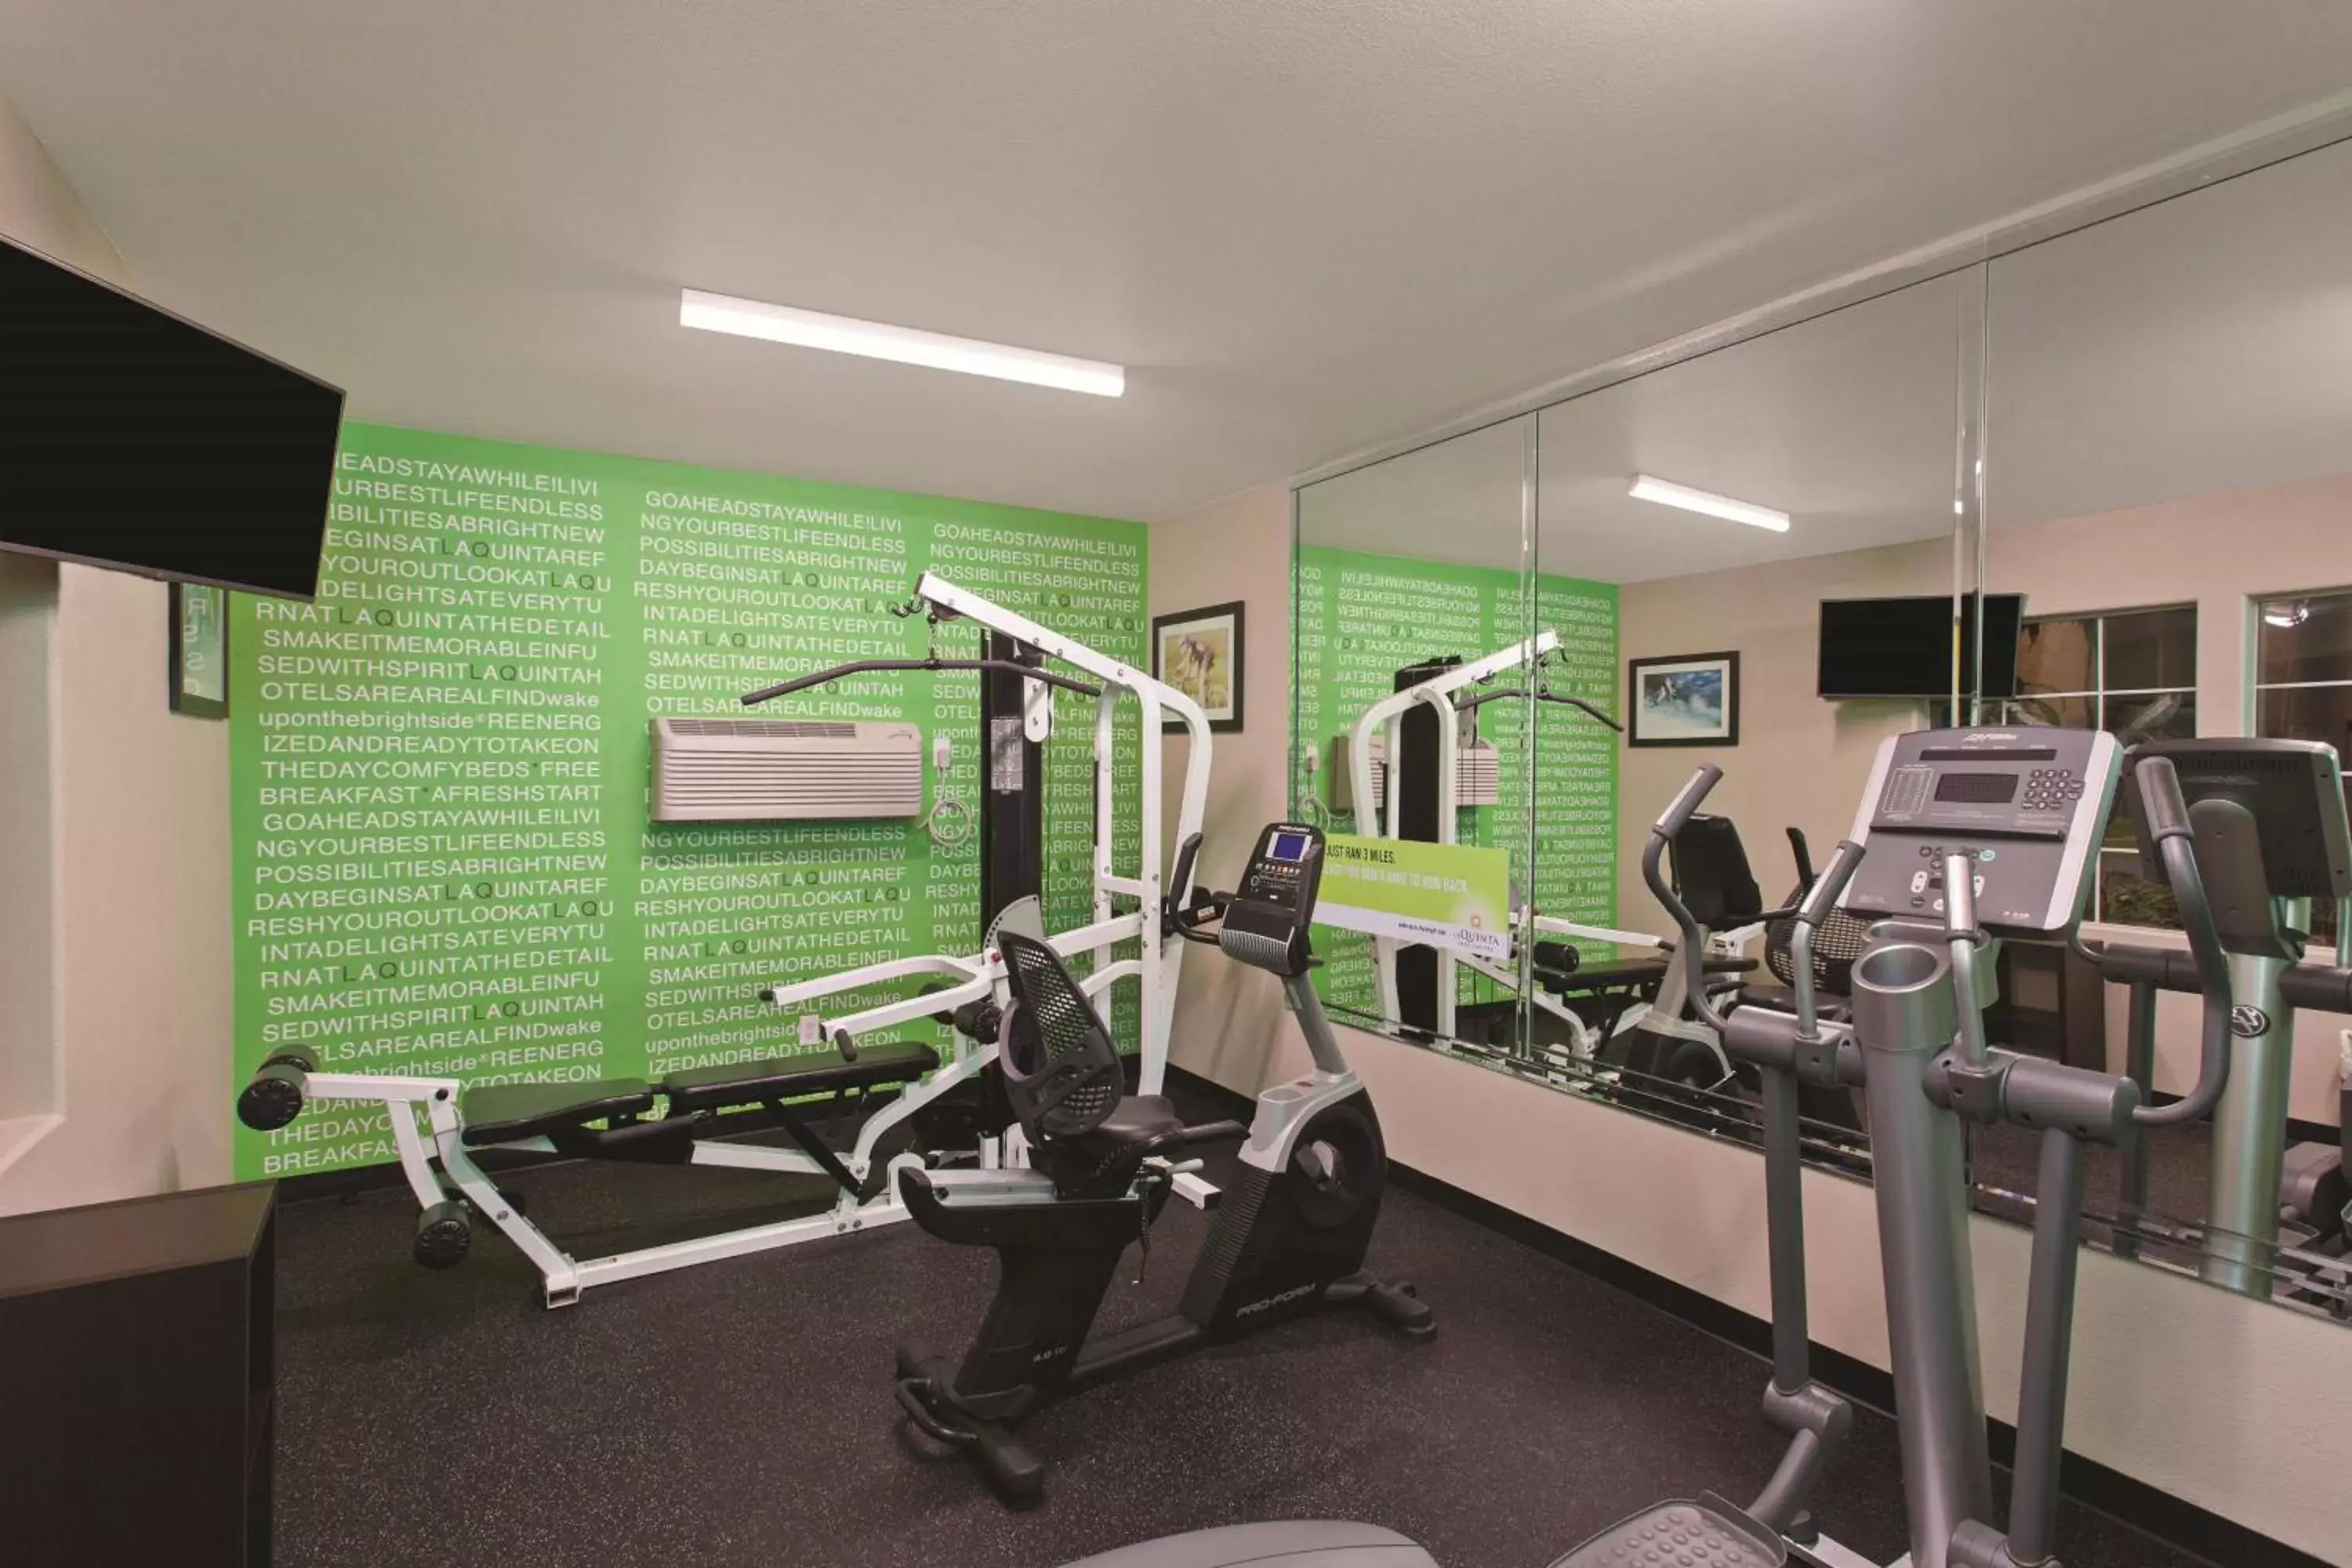 Fitness centre/facilities, Fitness Center/Facilities in La Quinta by Wyndham Los Banos